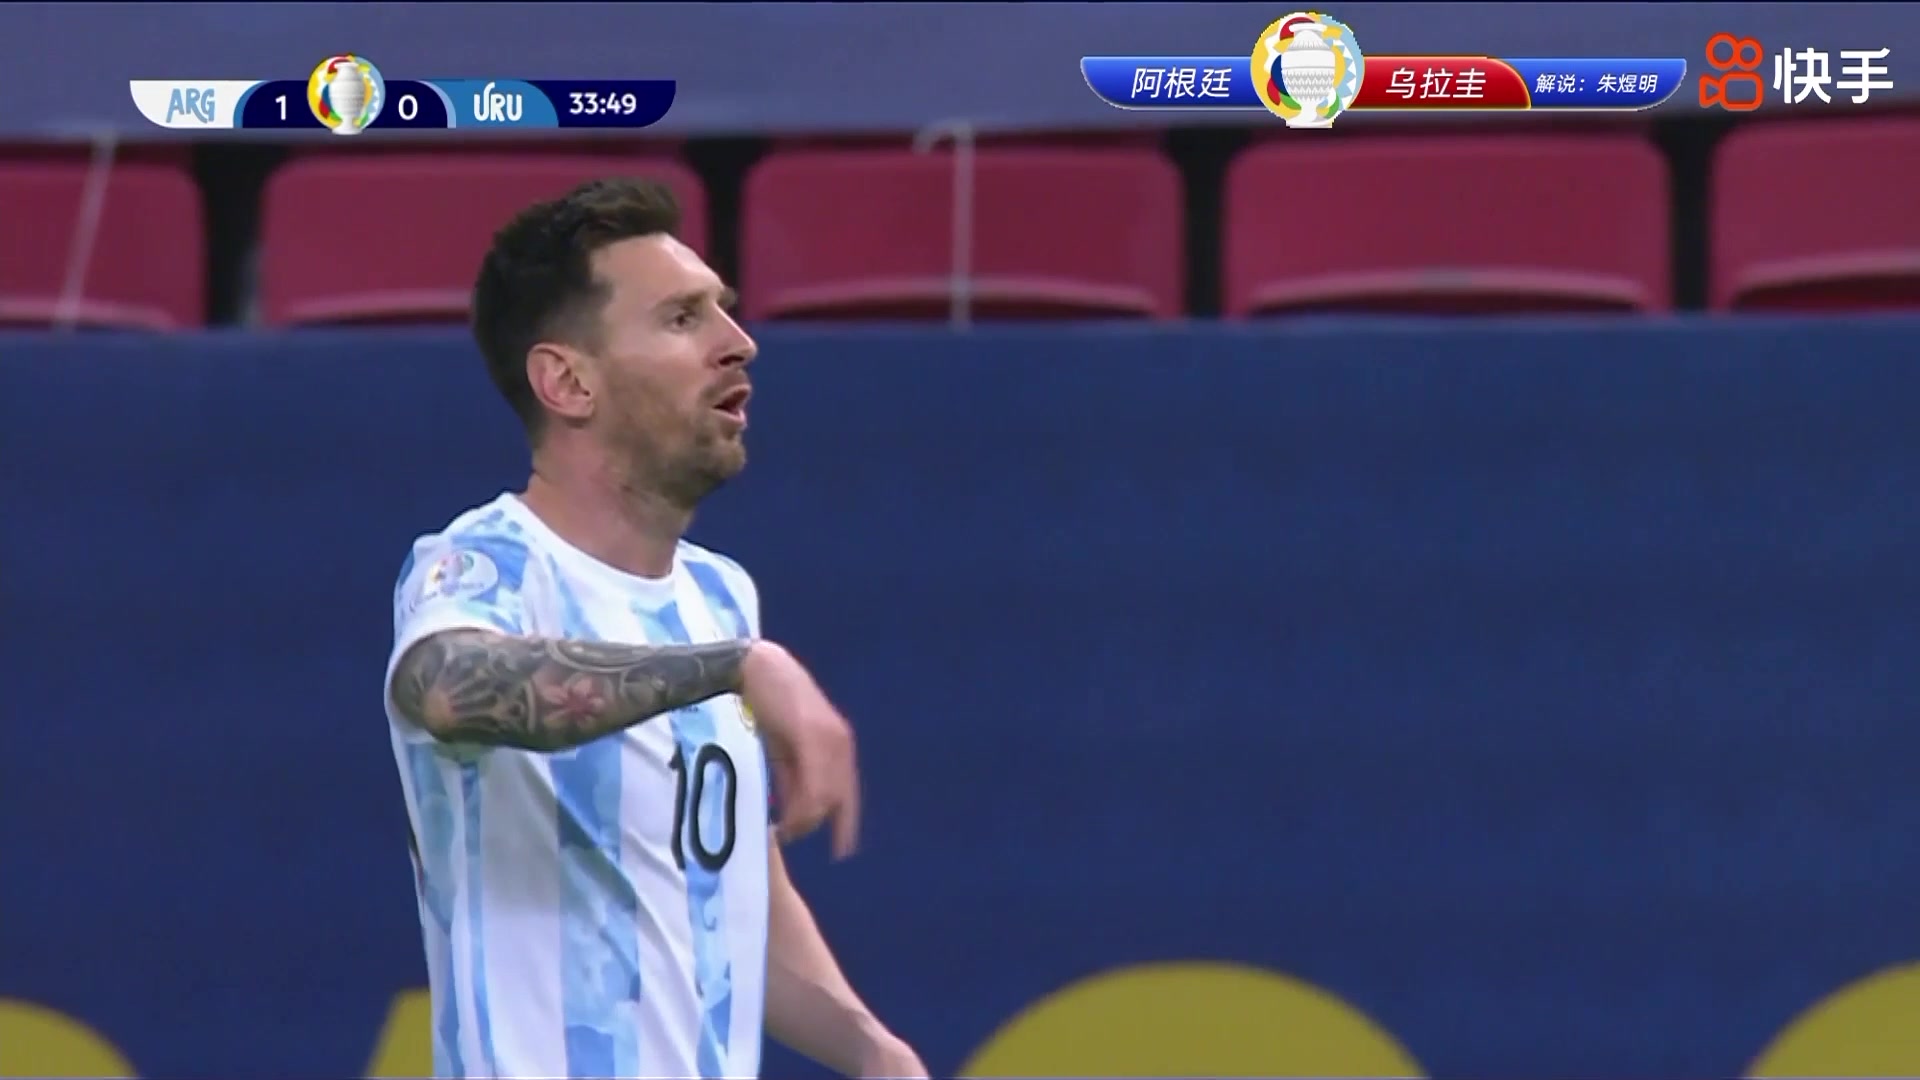 【快手集锦】美洲杯-梅西助攻罗德里格斯破门 阿根廷1-0乌拉圭